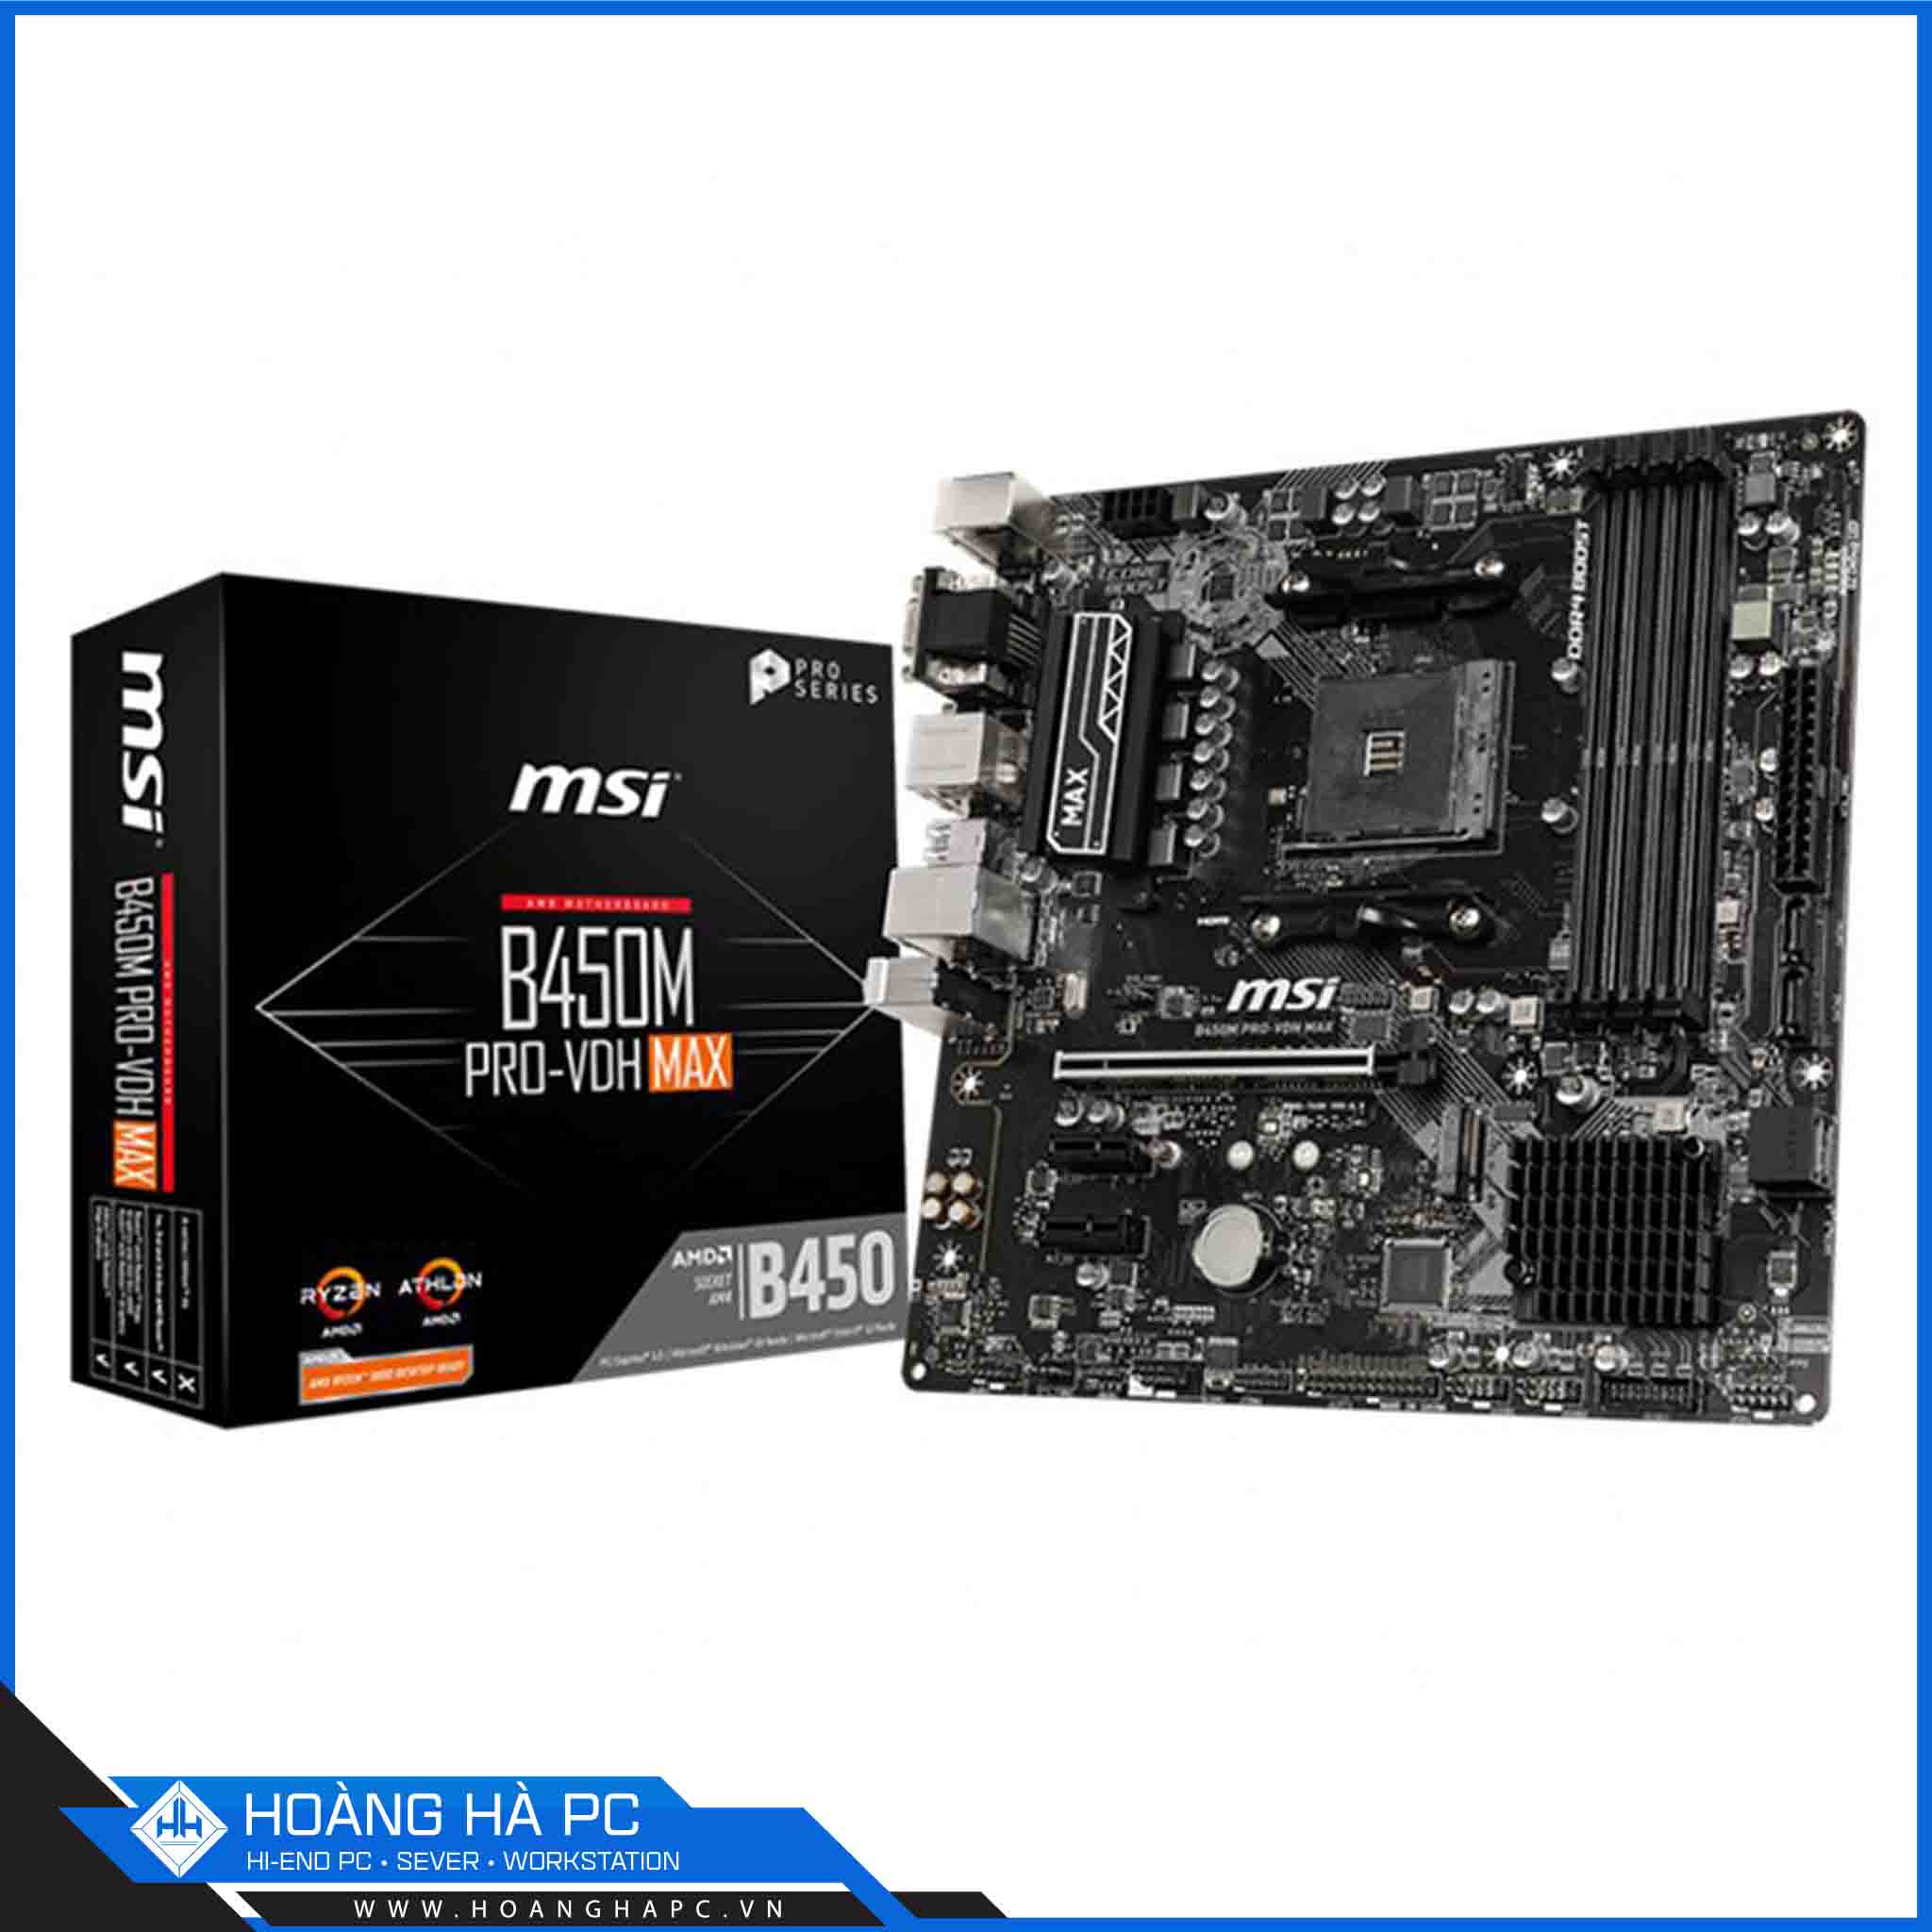 Mainboard MSI B450M PRO VDH MAX (AMD B450, Socket AM4, m-ATX, 4 khe RAM DDR4)